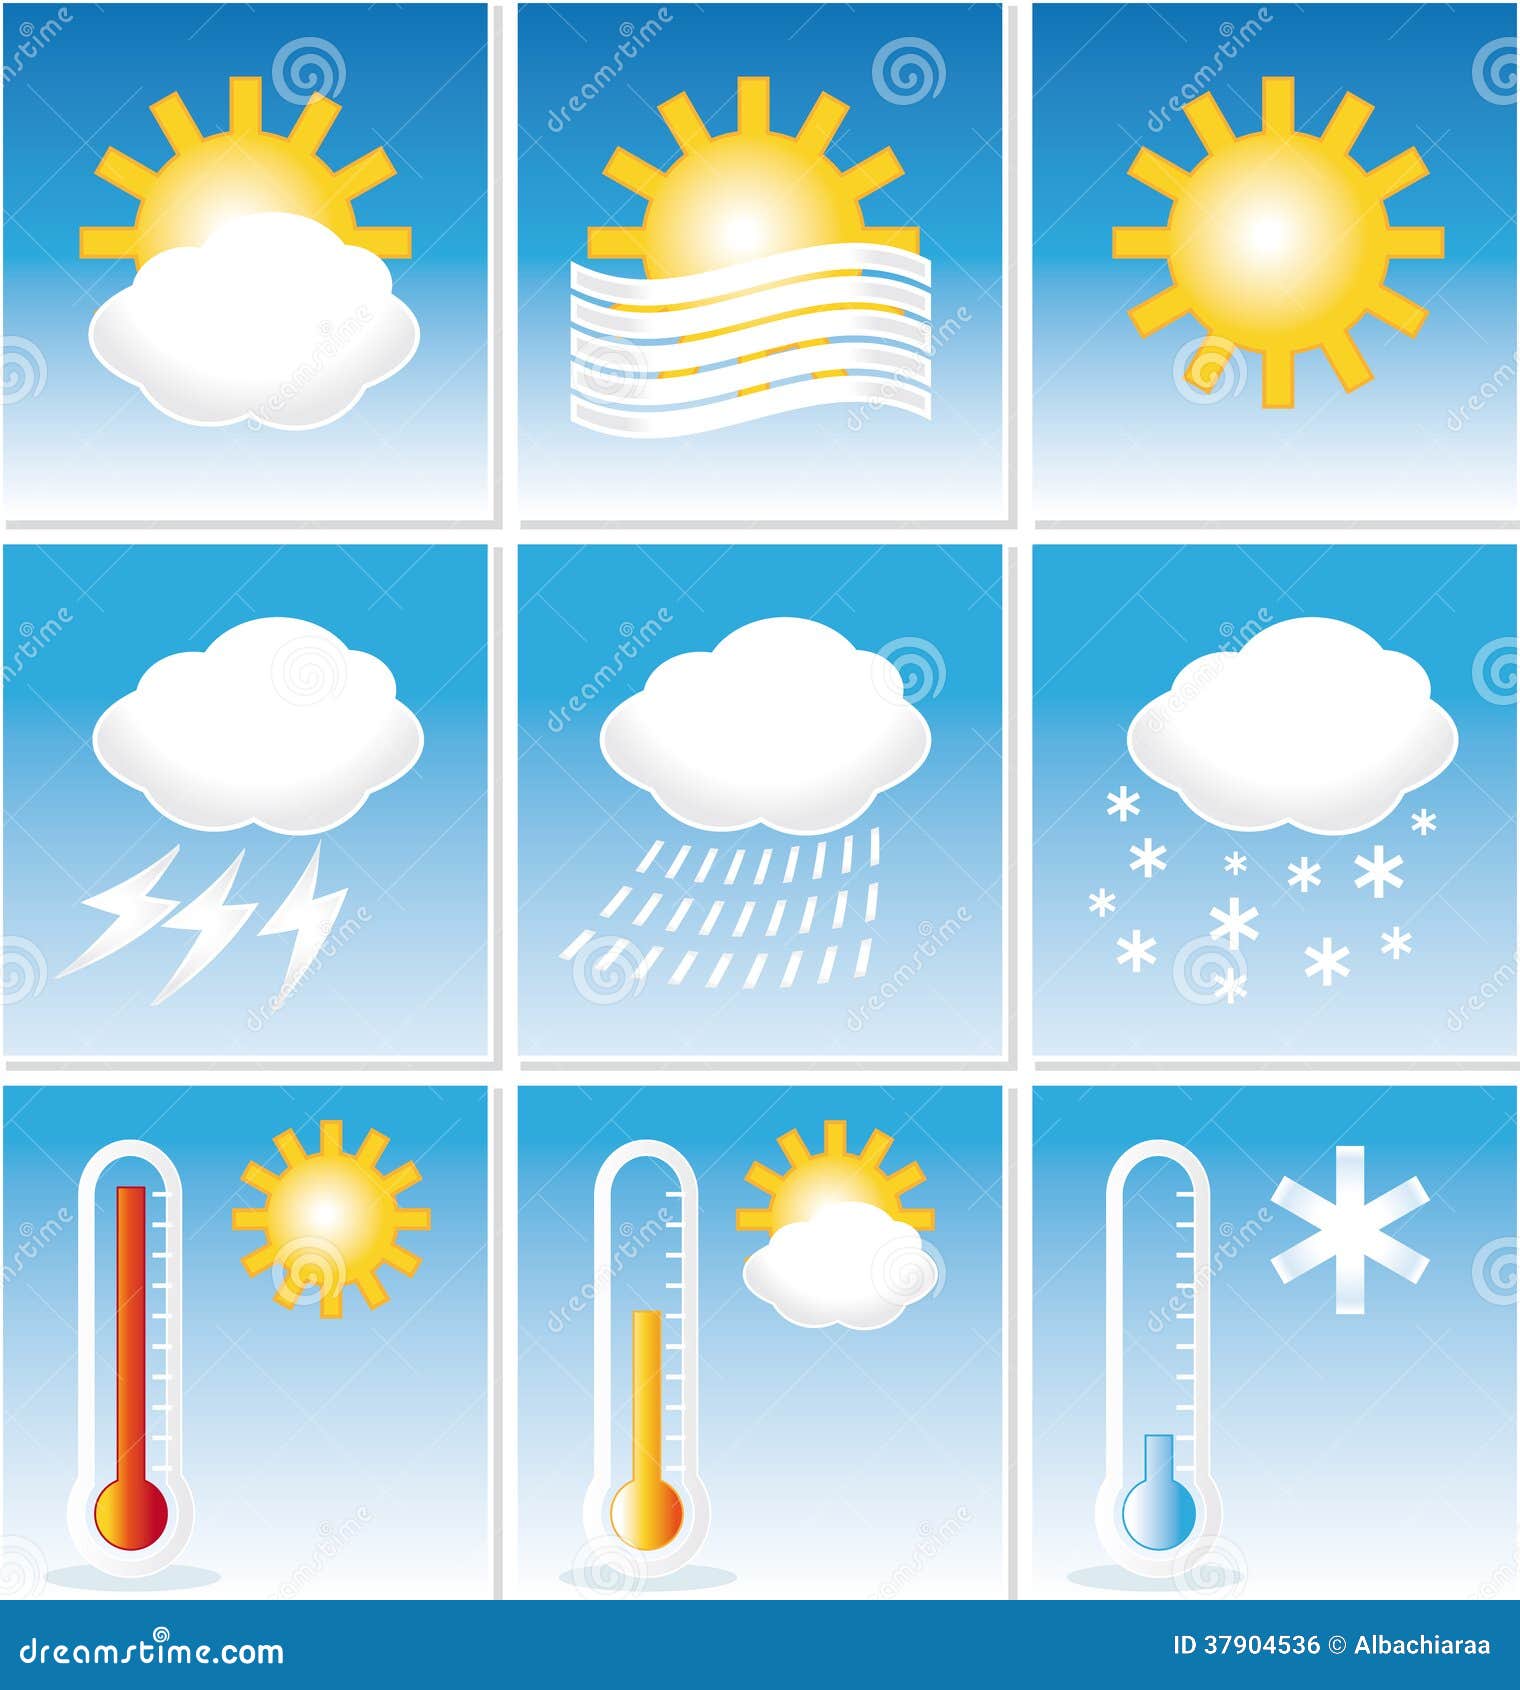 Примеры что элементы погоды взаимосвязаны. Погодные элементы. Метеорологические элементы. Метеорологические погодные элементы. Схема элементов погоды.